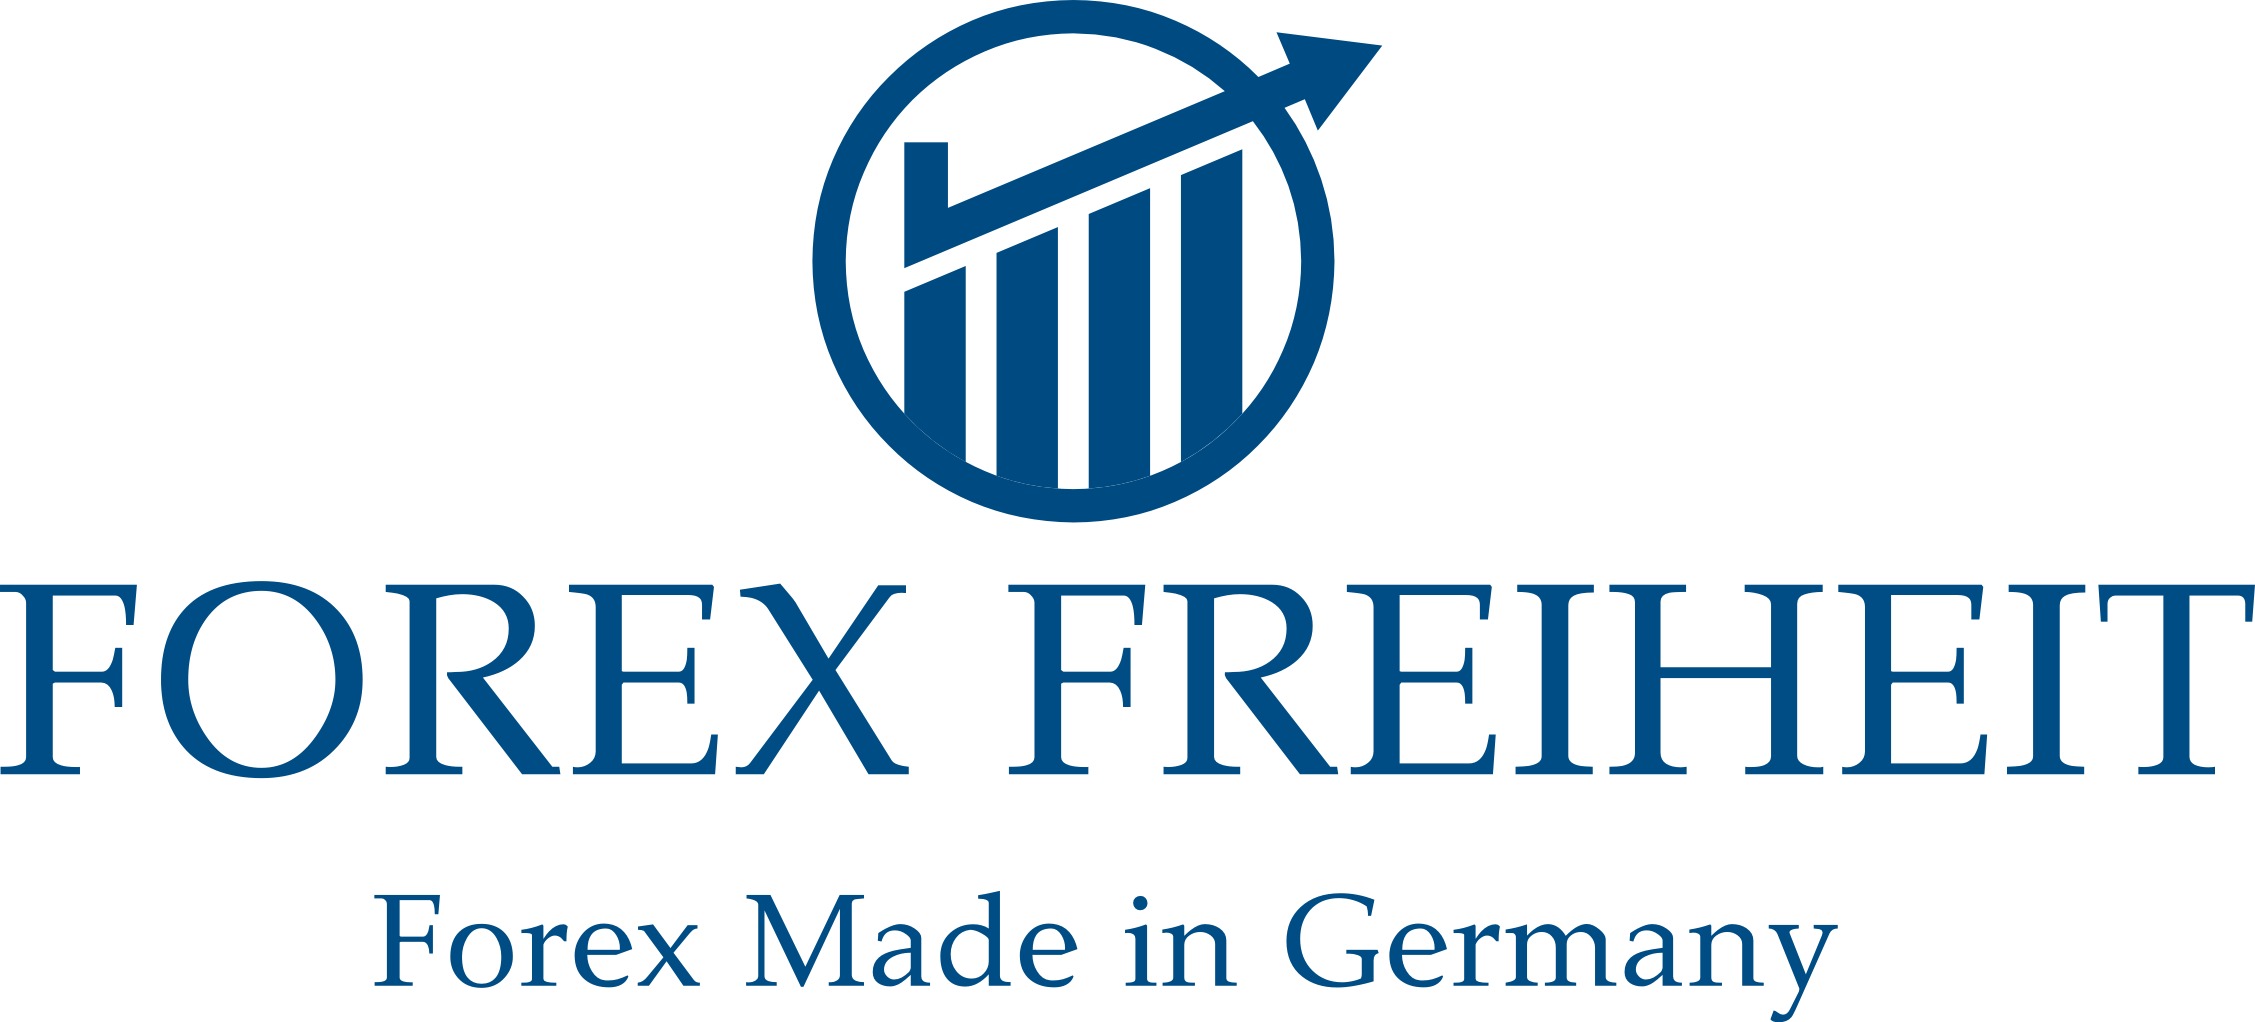 Forex Freiheit